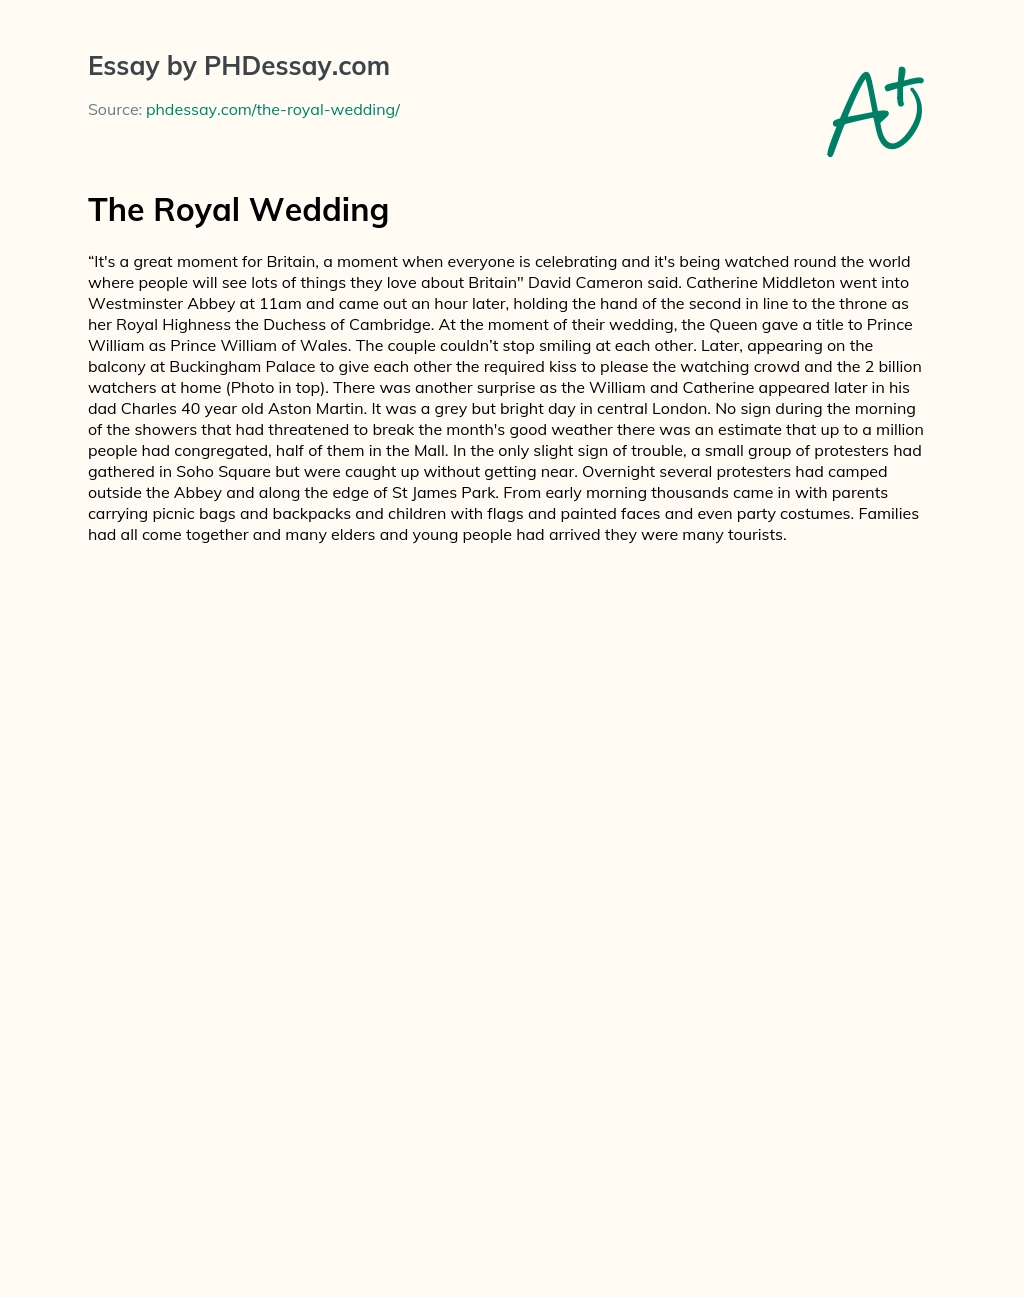 The Royal Wedding essay